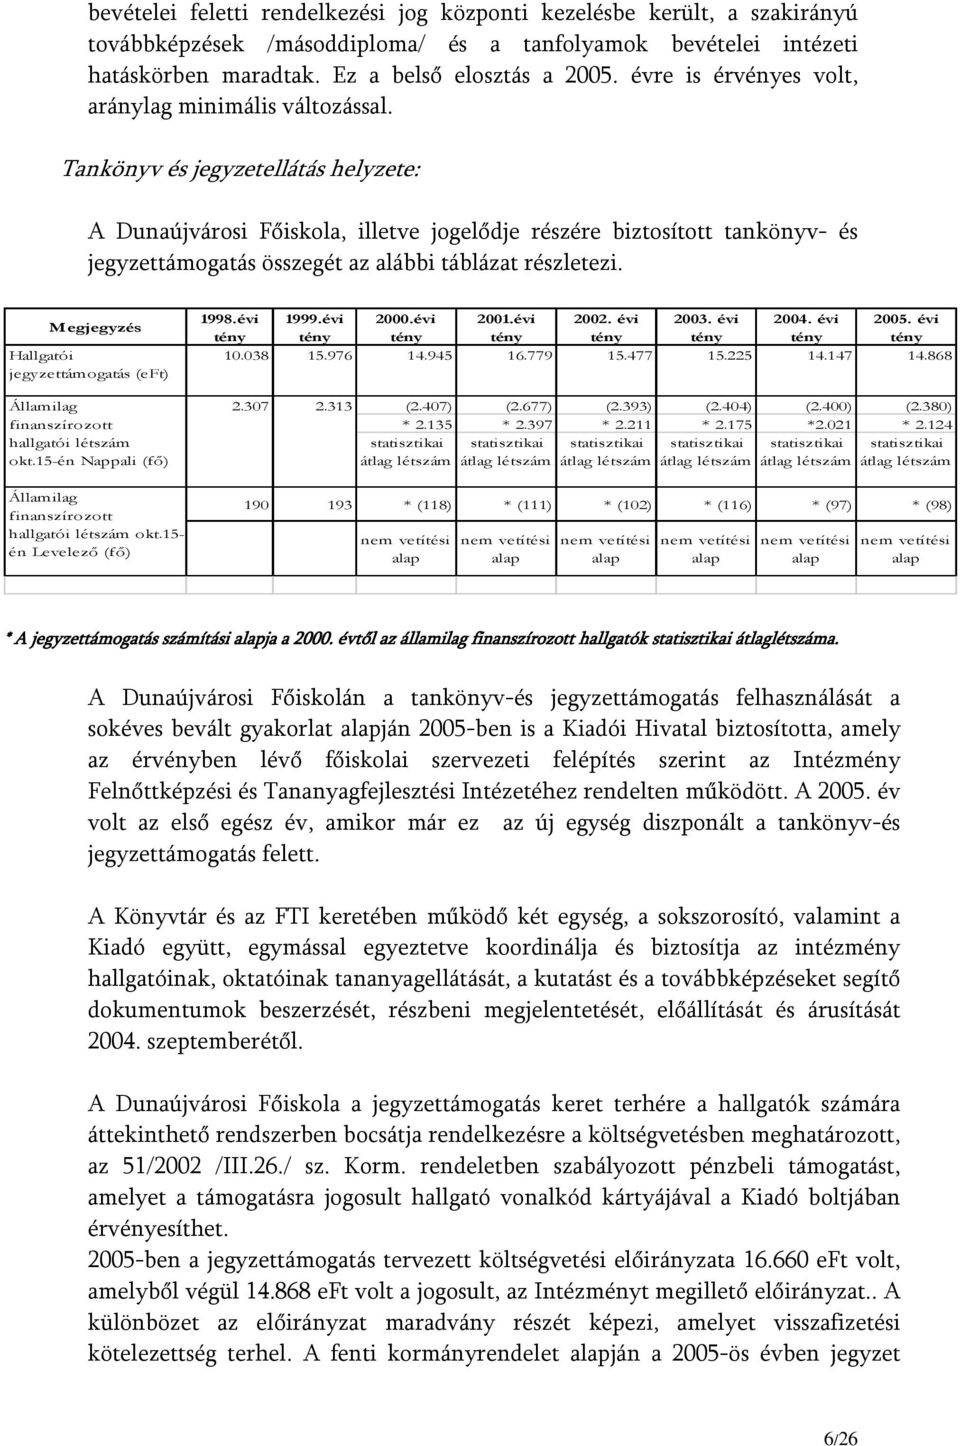 Tankönyv és jegyzetellátás helyzete: A Dunaújvárosi Főiskola, illetve jogelődje részére biztosított tankönyv- és jegyzettámogatás összegét az alábbi táblázat részletezi.